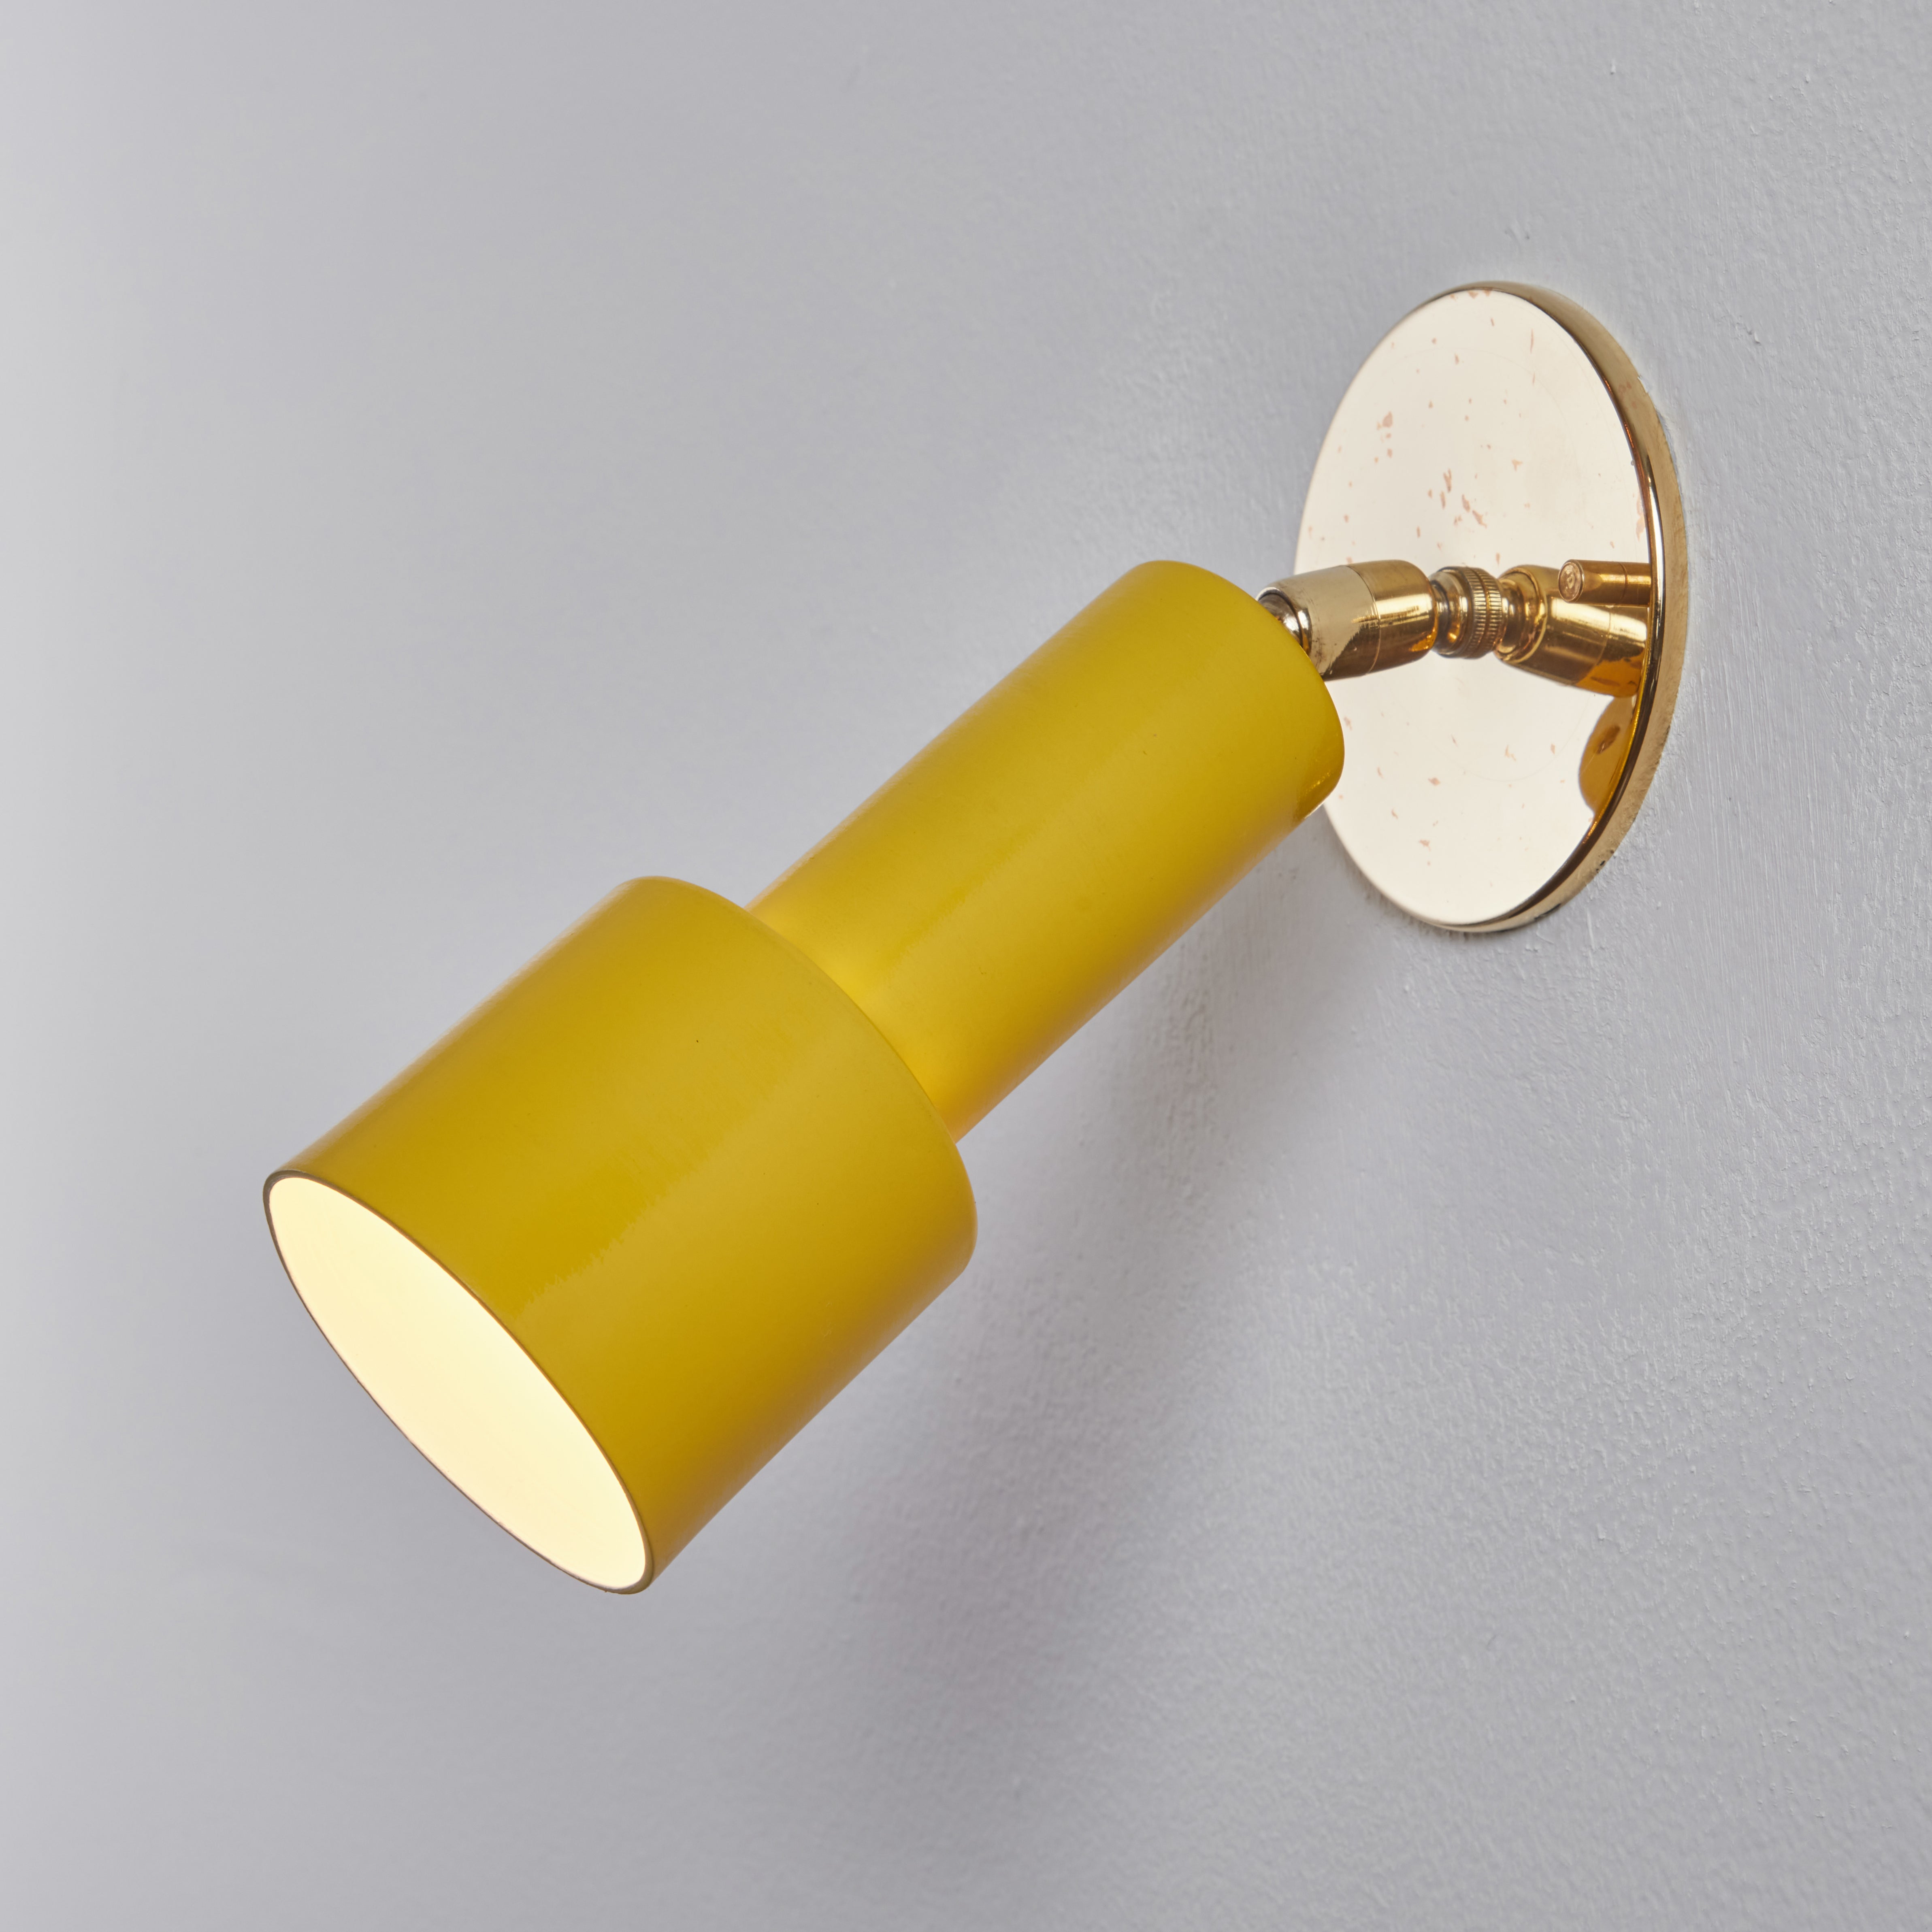 Applique en métal jaune et laiton perforé Tito Agnoli des années 1960 pour O-Luce. Ces appliques iconiques sont exécutées en métal perforé peint en jaune et en laiton. Les lampes tournent librement sur des pivots doubles hautement réglables. Un